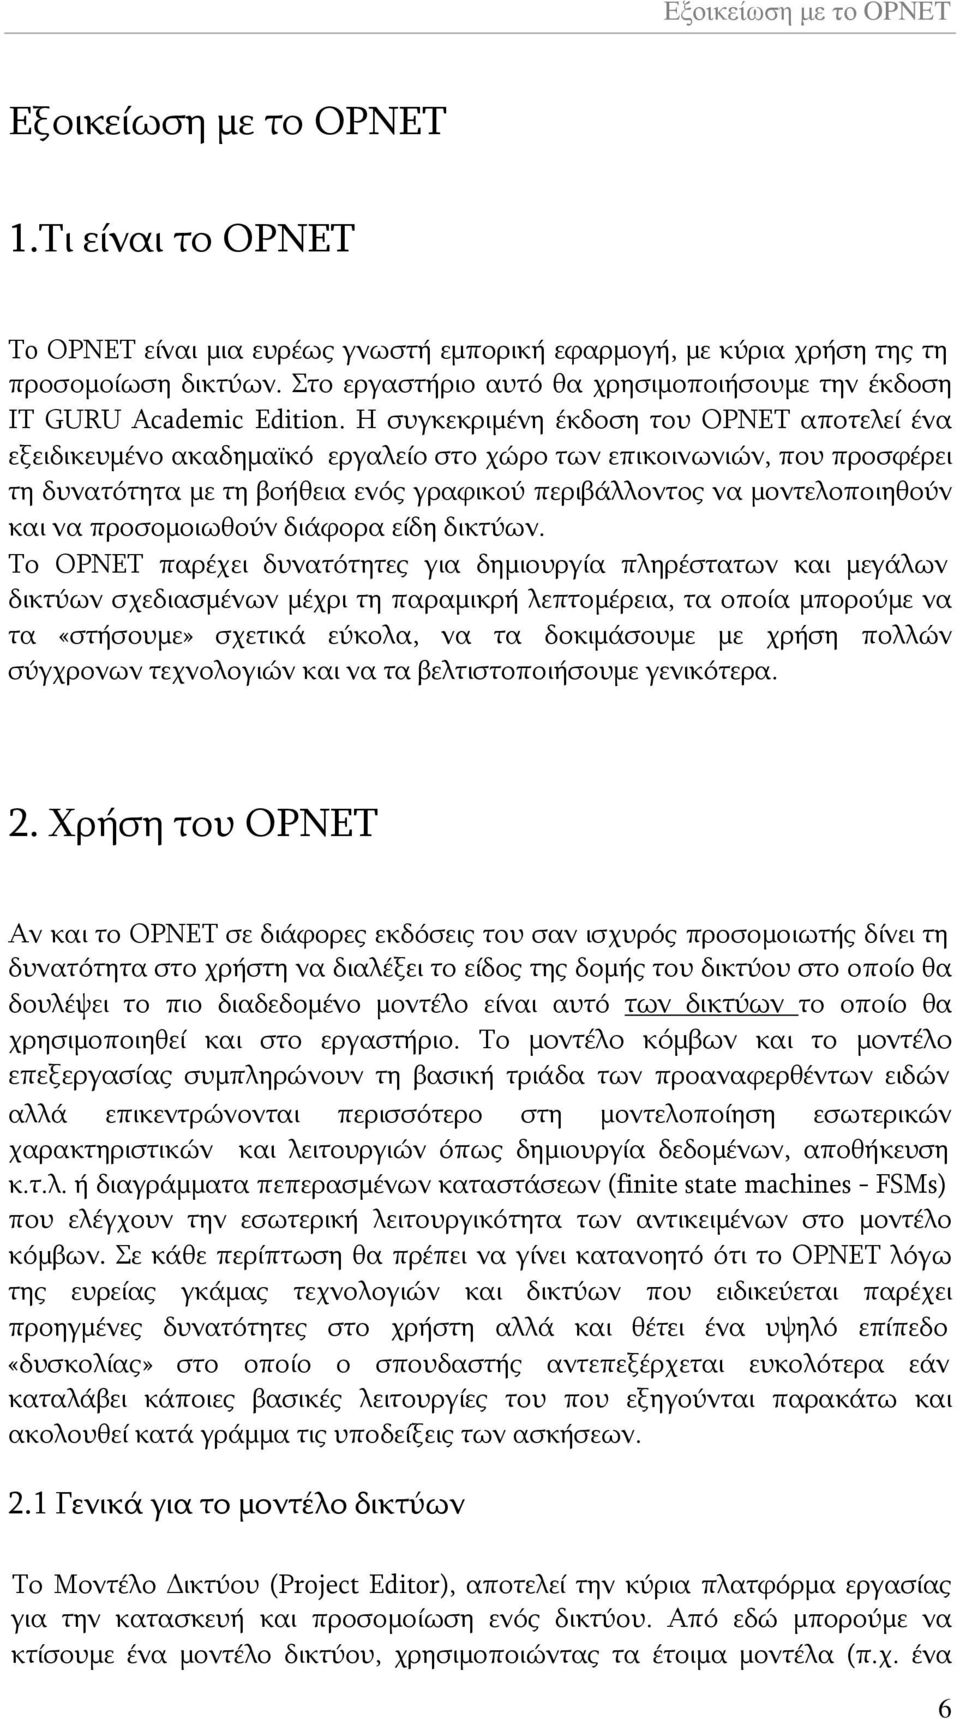 Η συγκεκριμένη έκδοση του OPNET αποτελεί ένα εξειδικευμένο ακαδημαϊκό εργαλείο στο χώρο των επικοινωνιών, που προσφέρει τη δυνατότητα με τη βοήθεια ενός γραφικού περιβάλλοντος να μοντελοποιηθούν και